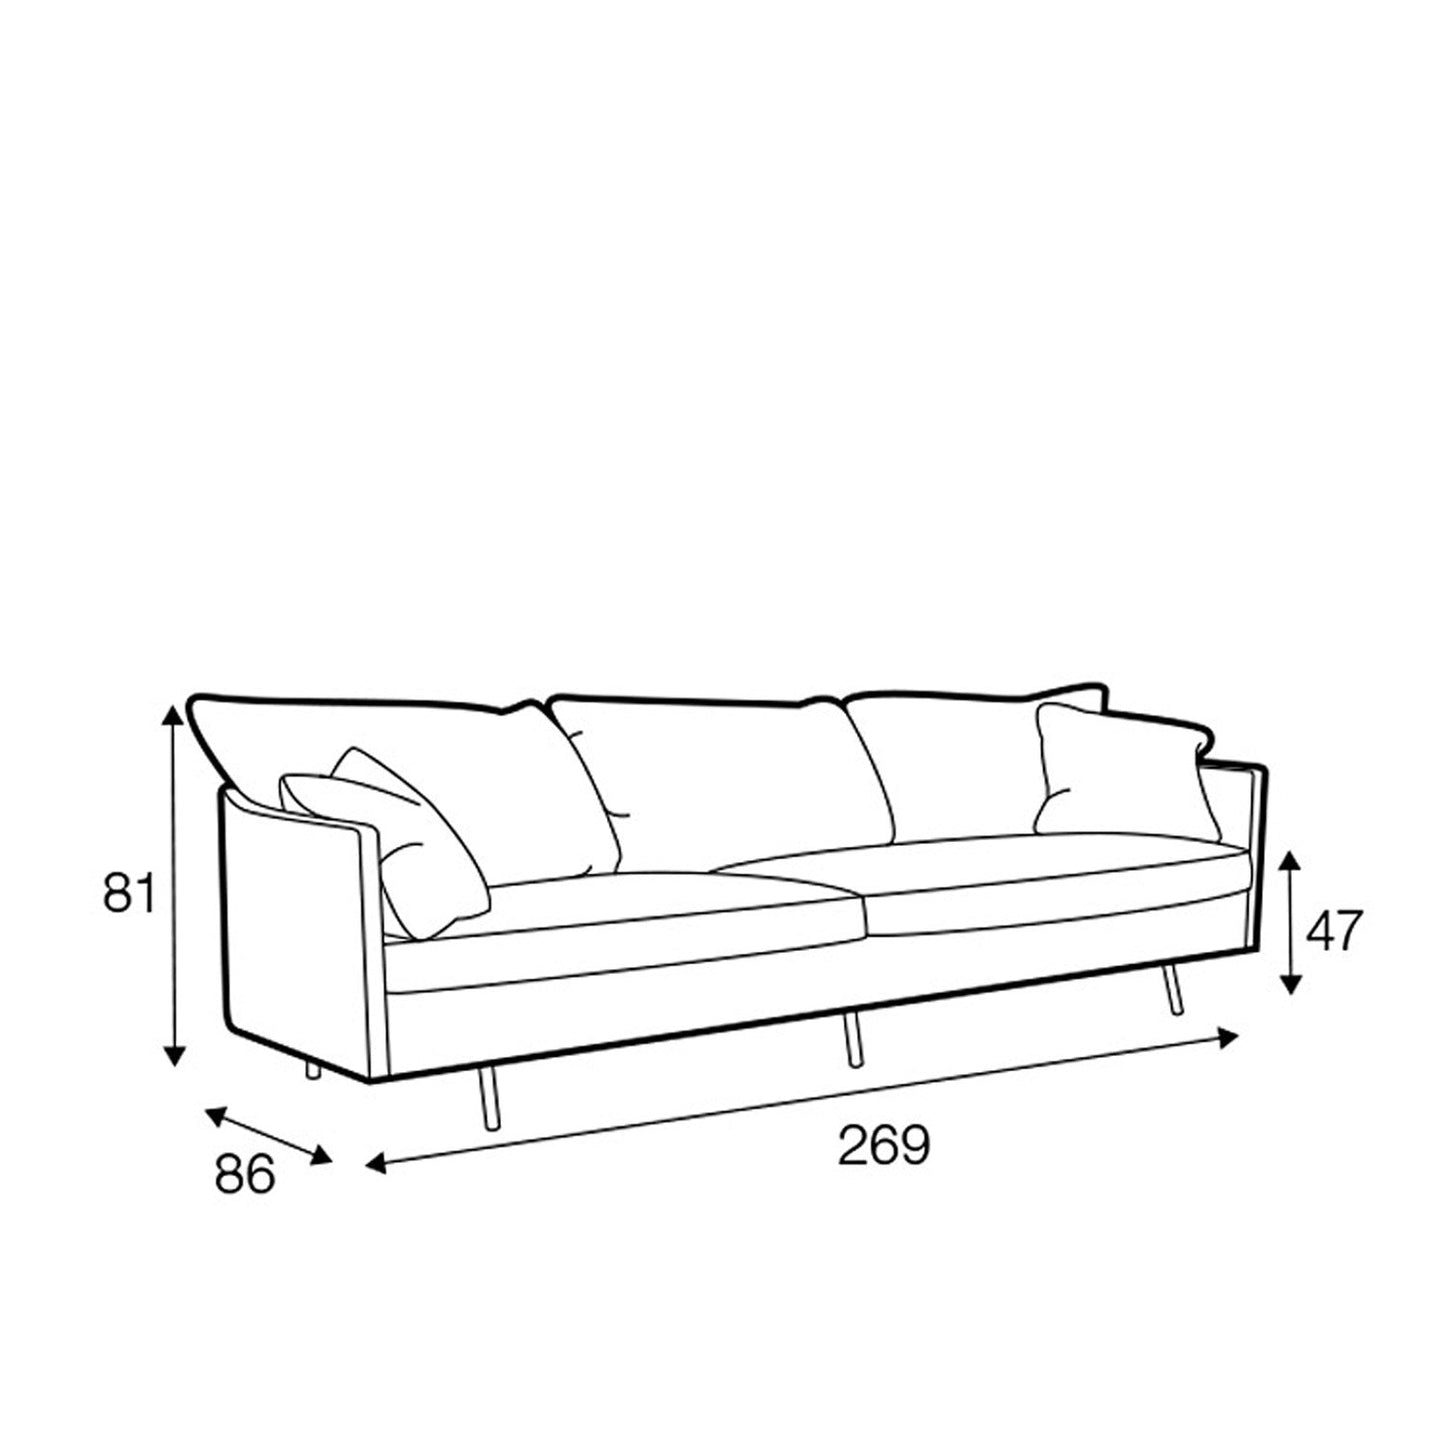 Julia 4-seter XL sofa, en del av kategorien 4-seter - At Home Interiør